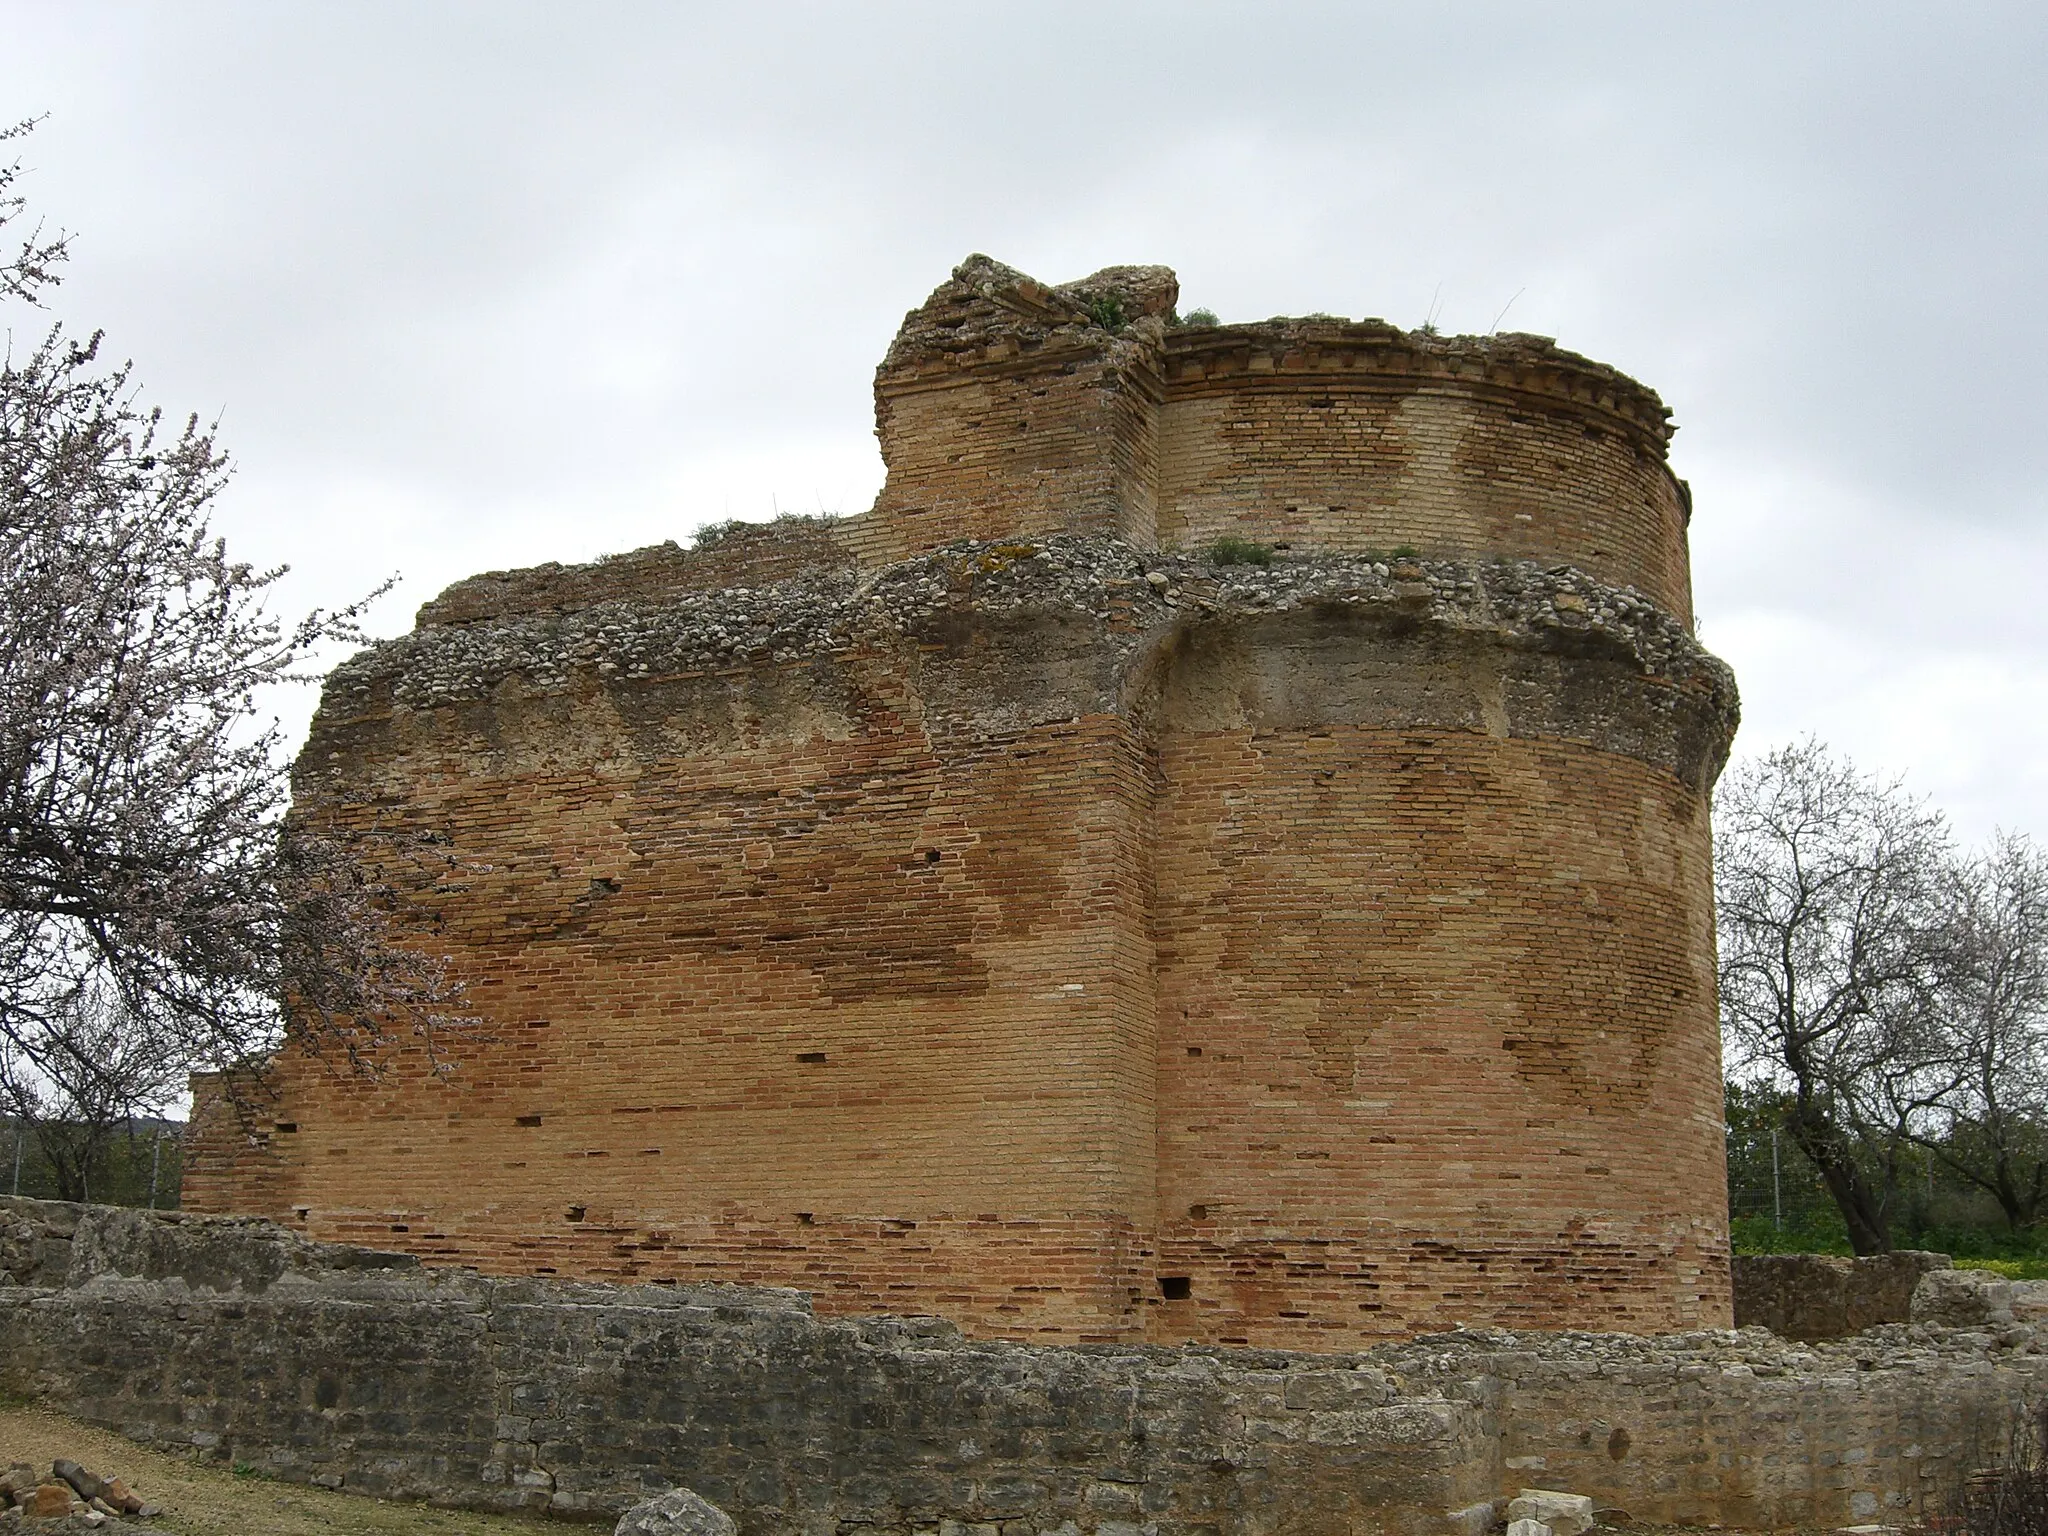 Photo showing: Ruinas romanas de Milreu, no concelho de Faro, Algarve, Portugal

Fonte - Próprio autor